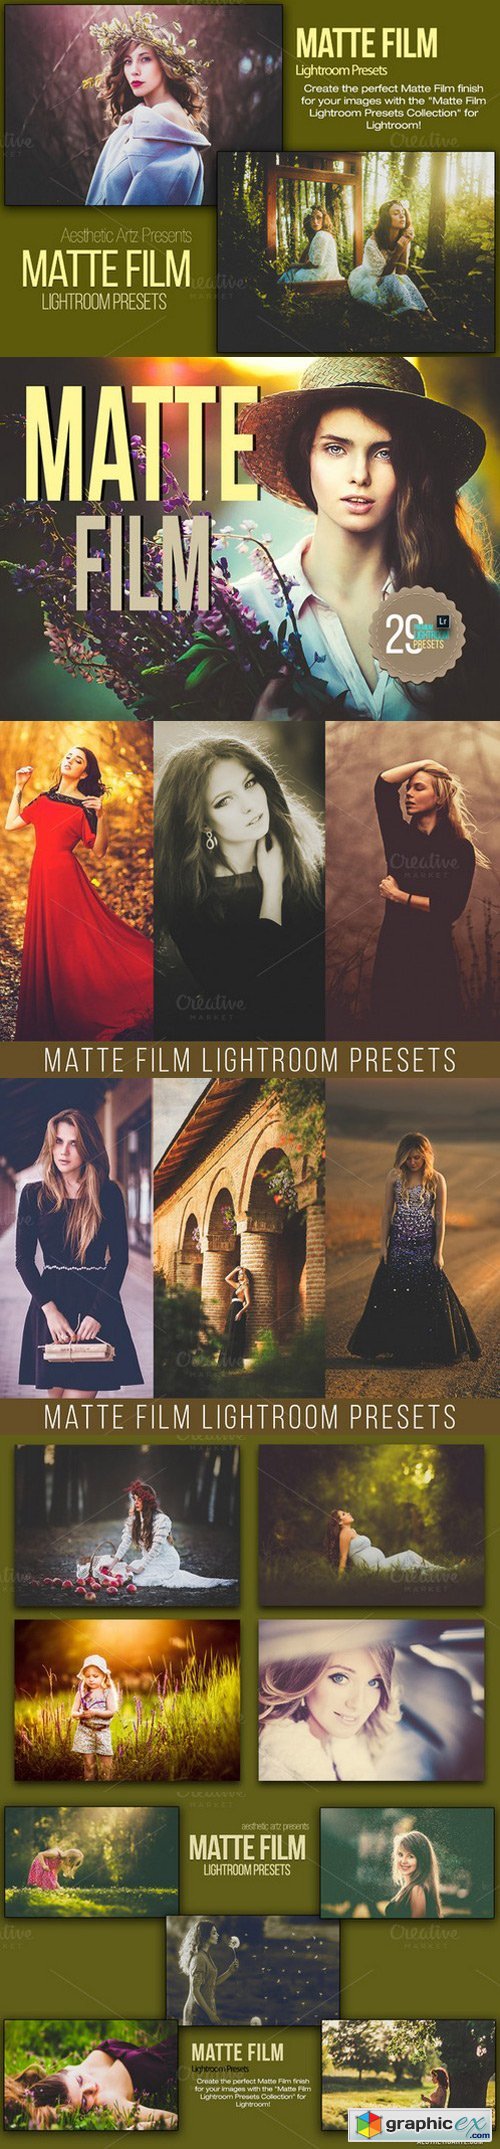 Matte Film Lightroom Presets